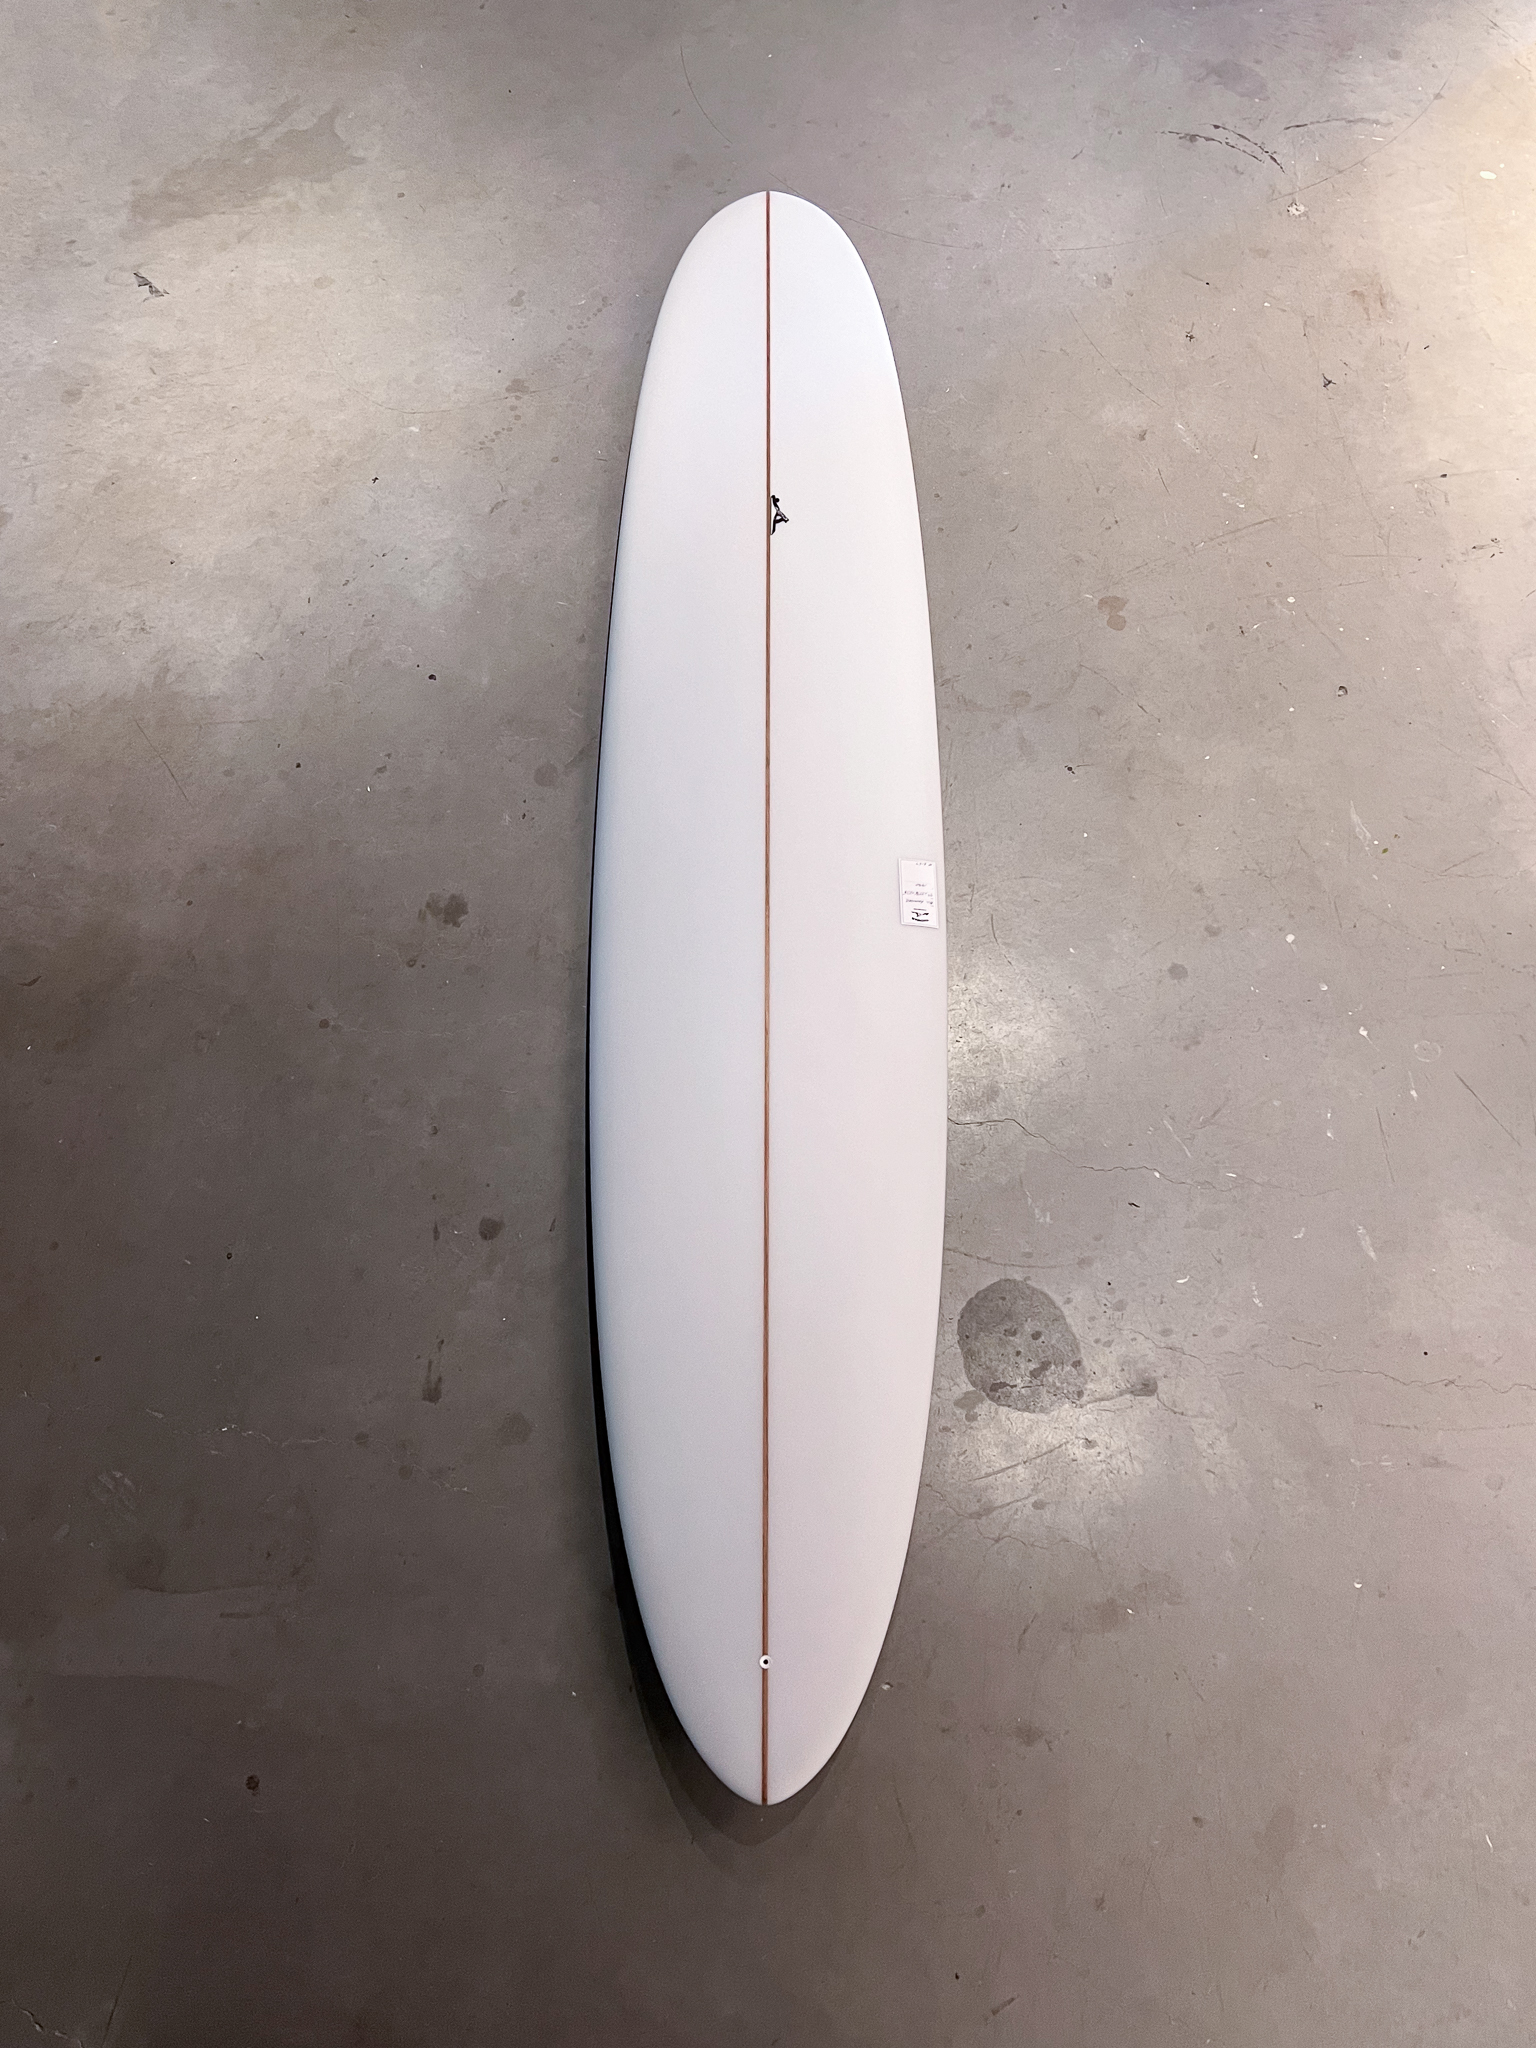 9’6” All Rounder Longboard Surfboard